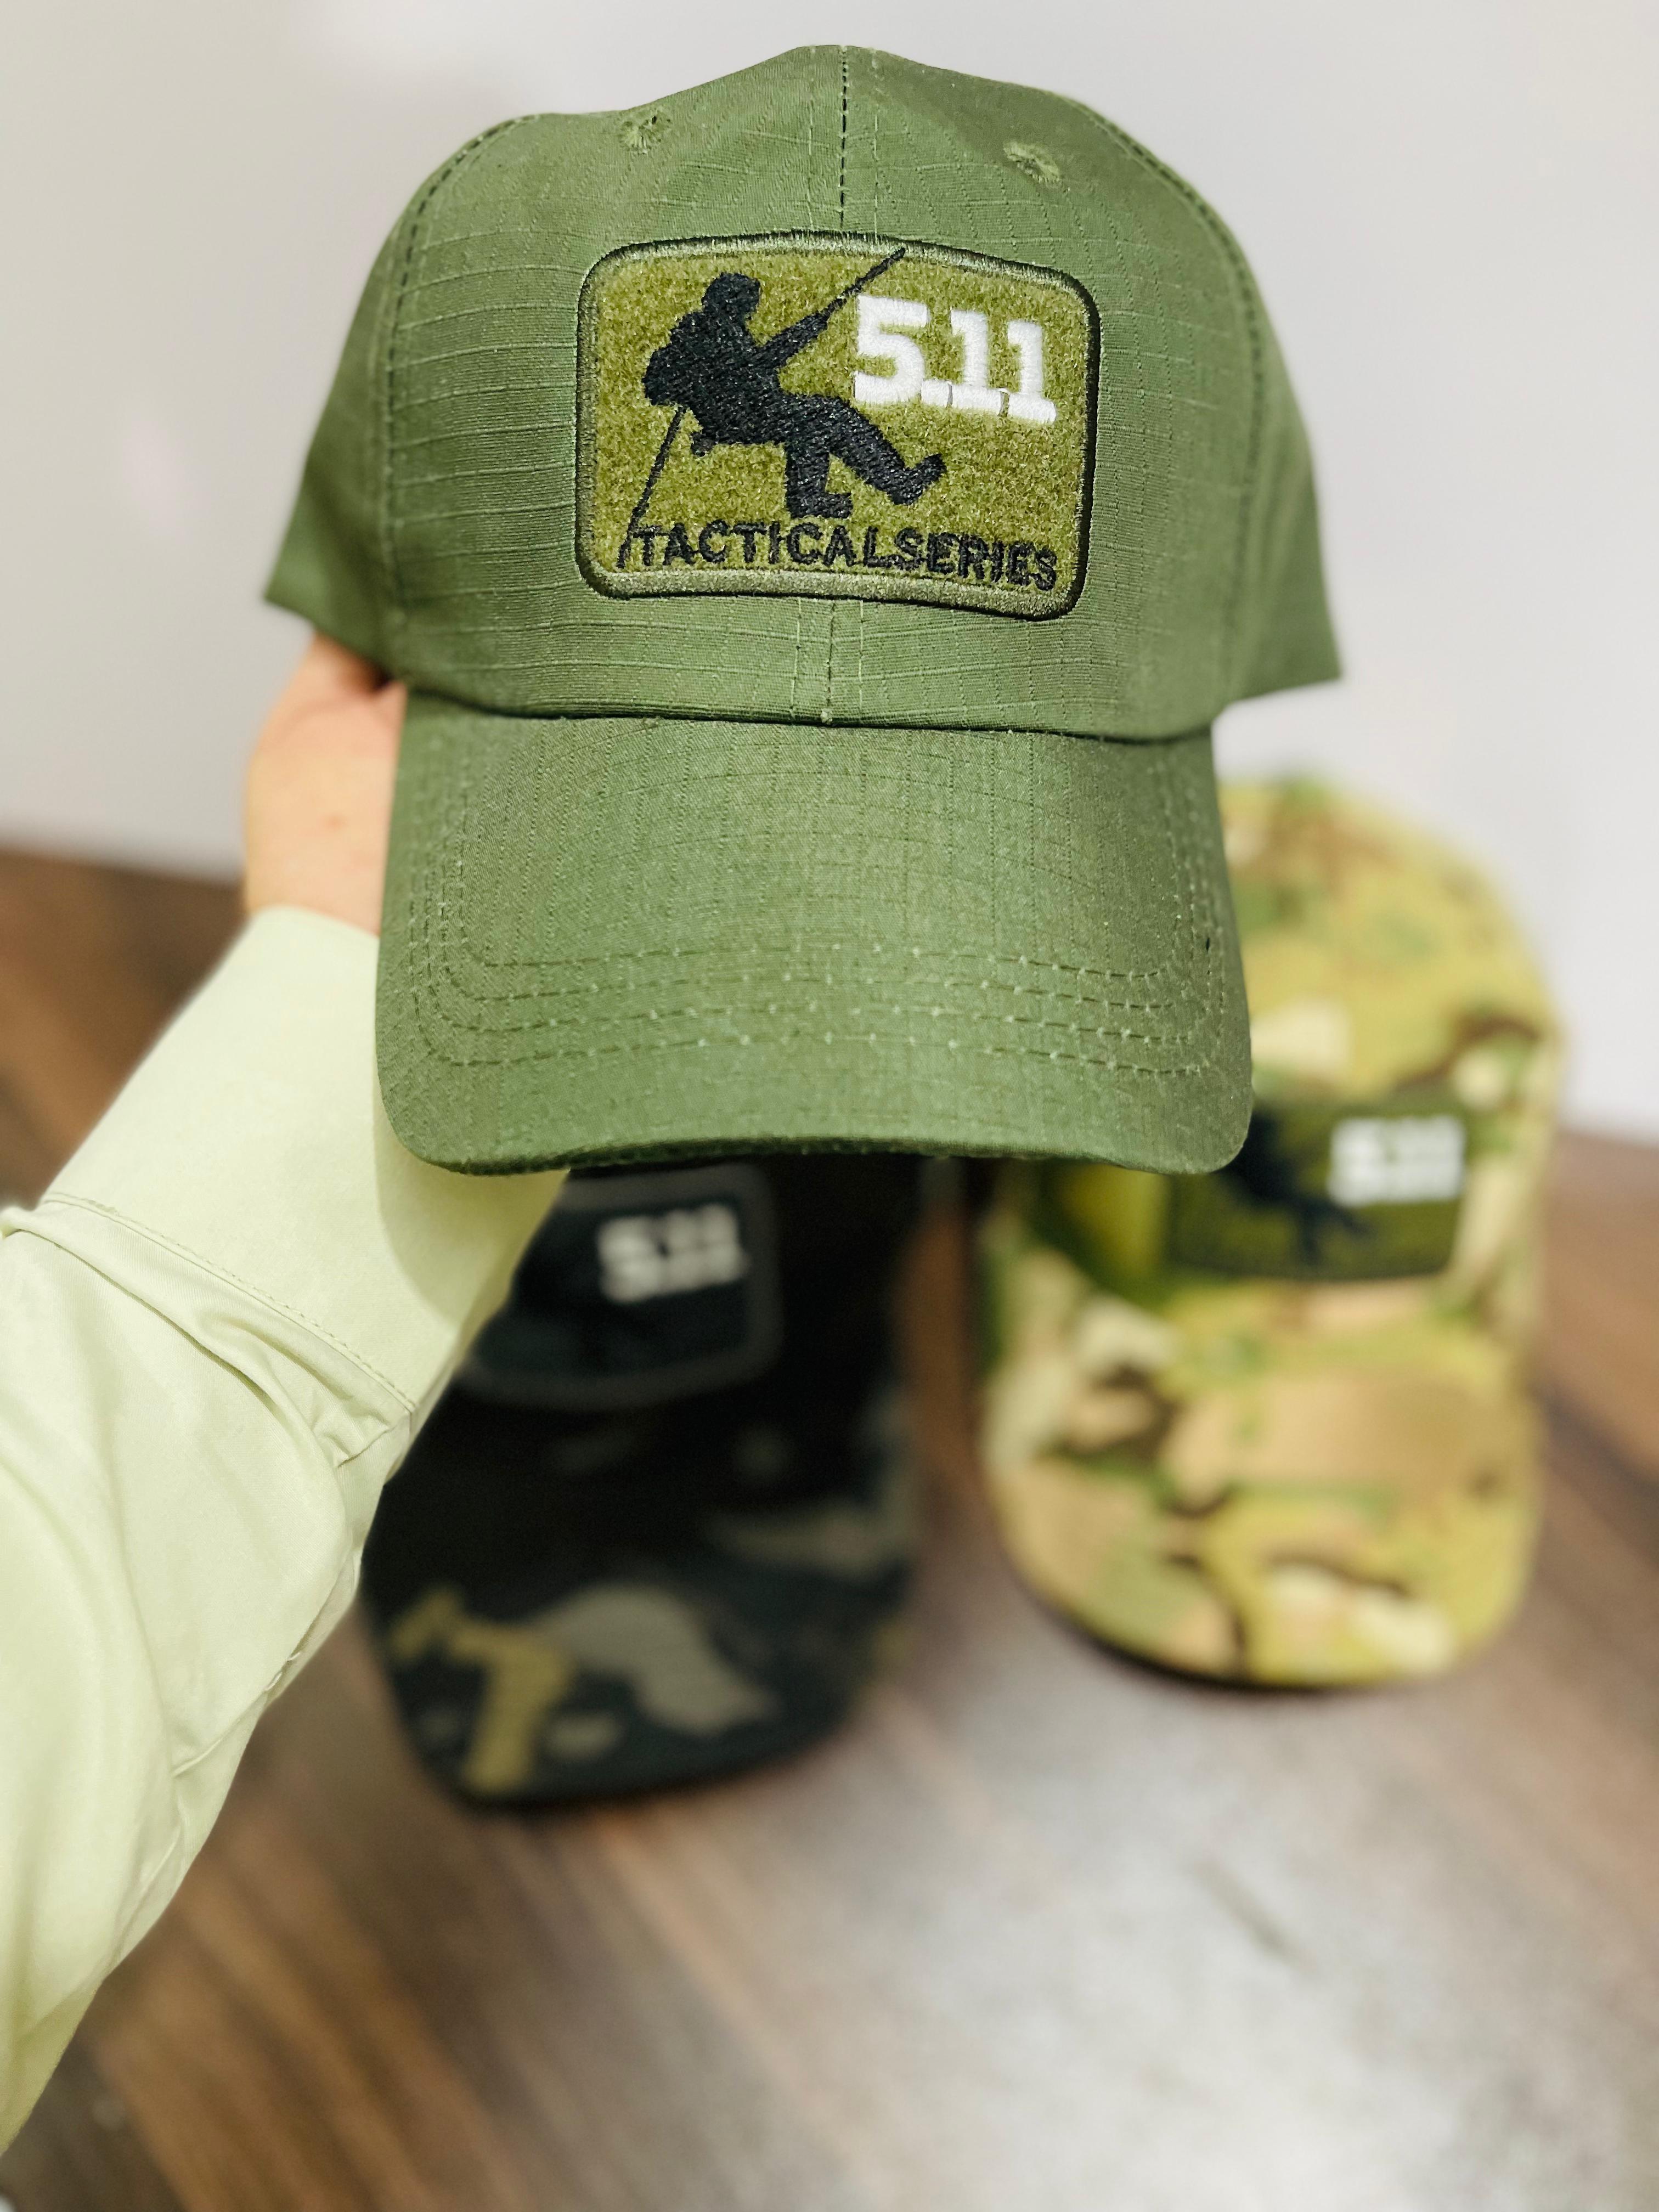 5.11 Tactical Series caps